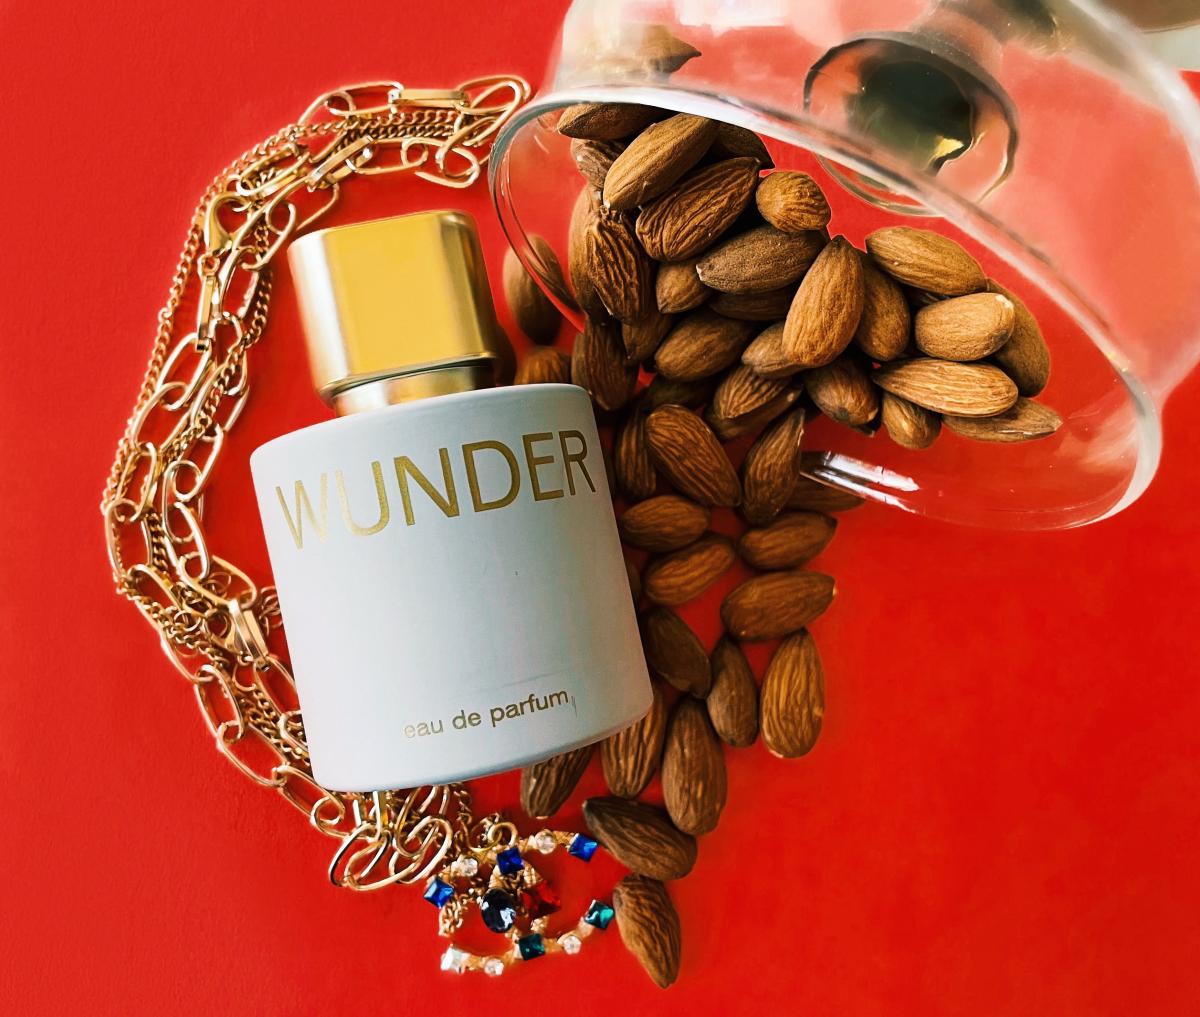 Wunder Mavemade parfum - un parfum pour homme et femme 2021